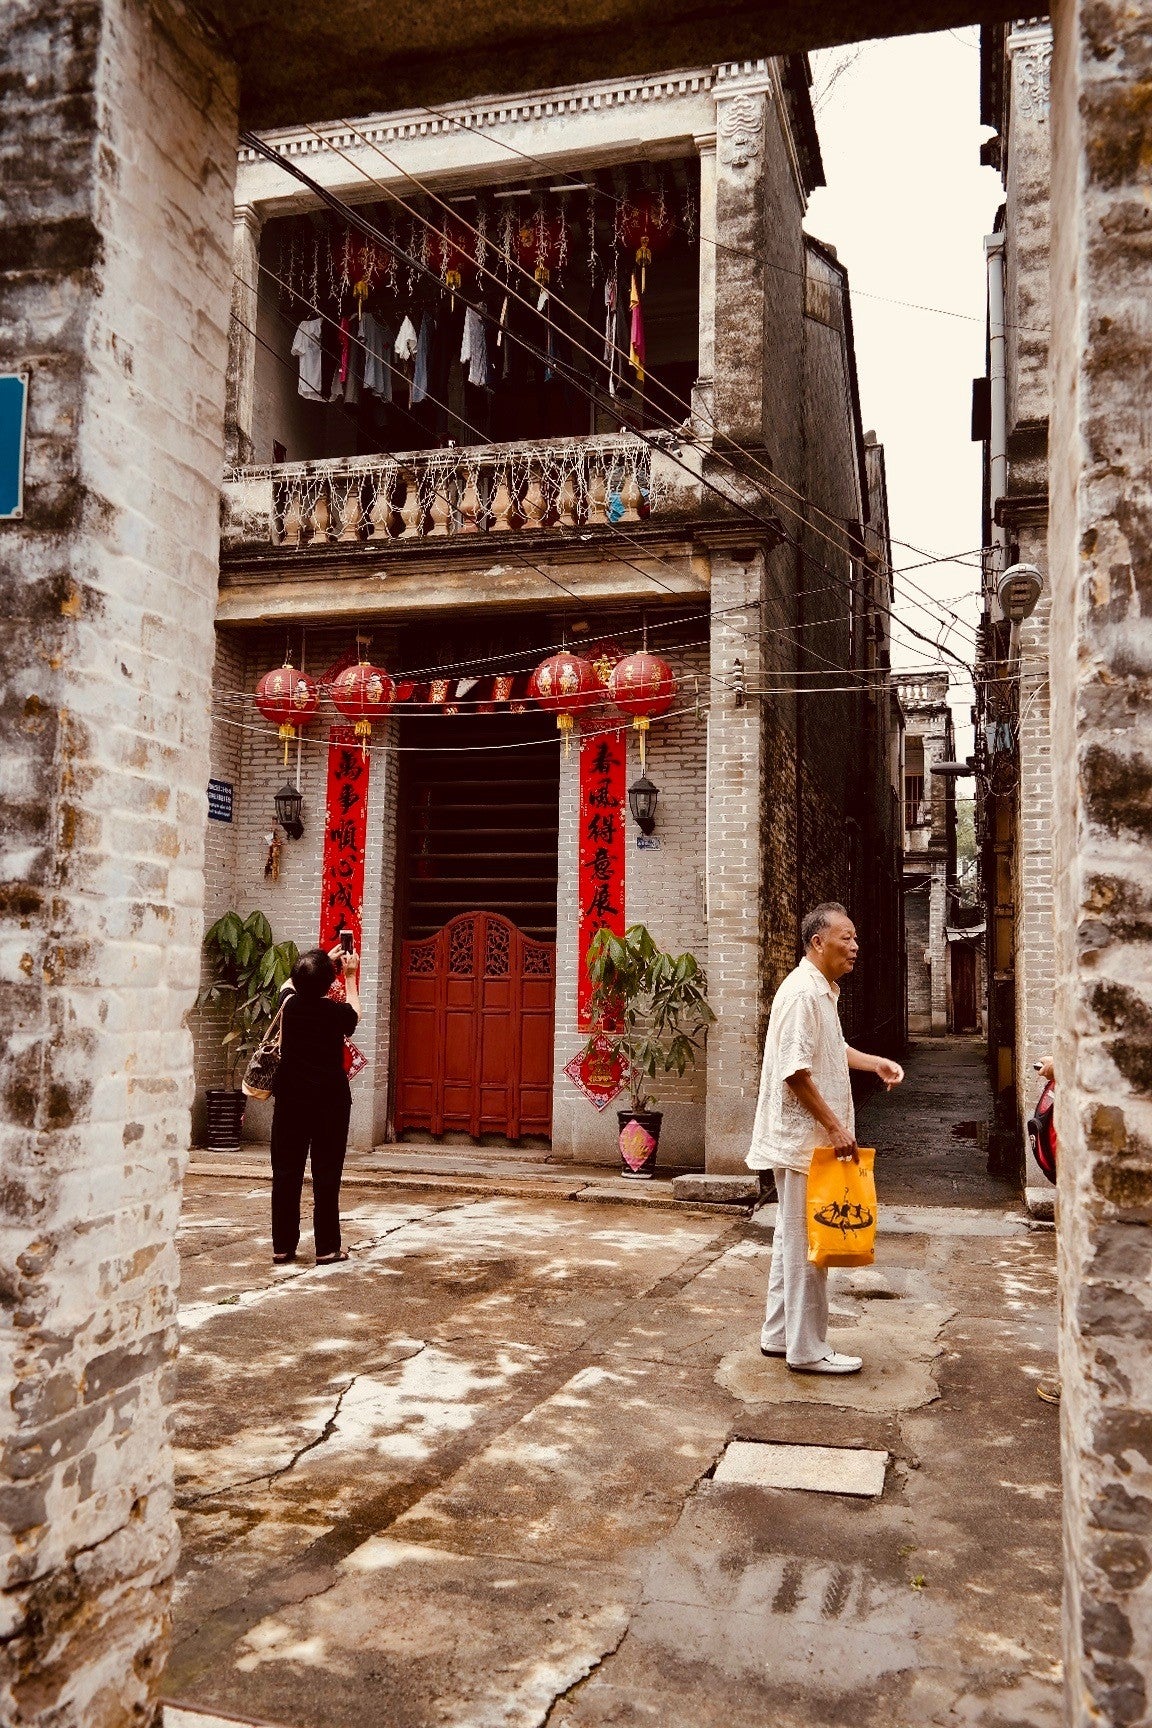 通过入口看到的前排房屋。照片中的男子是甘建波，他曾是中山市政府文物局的文物专家。